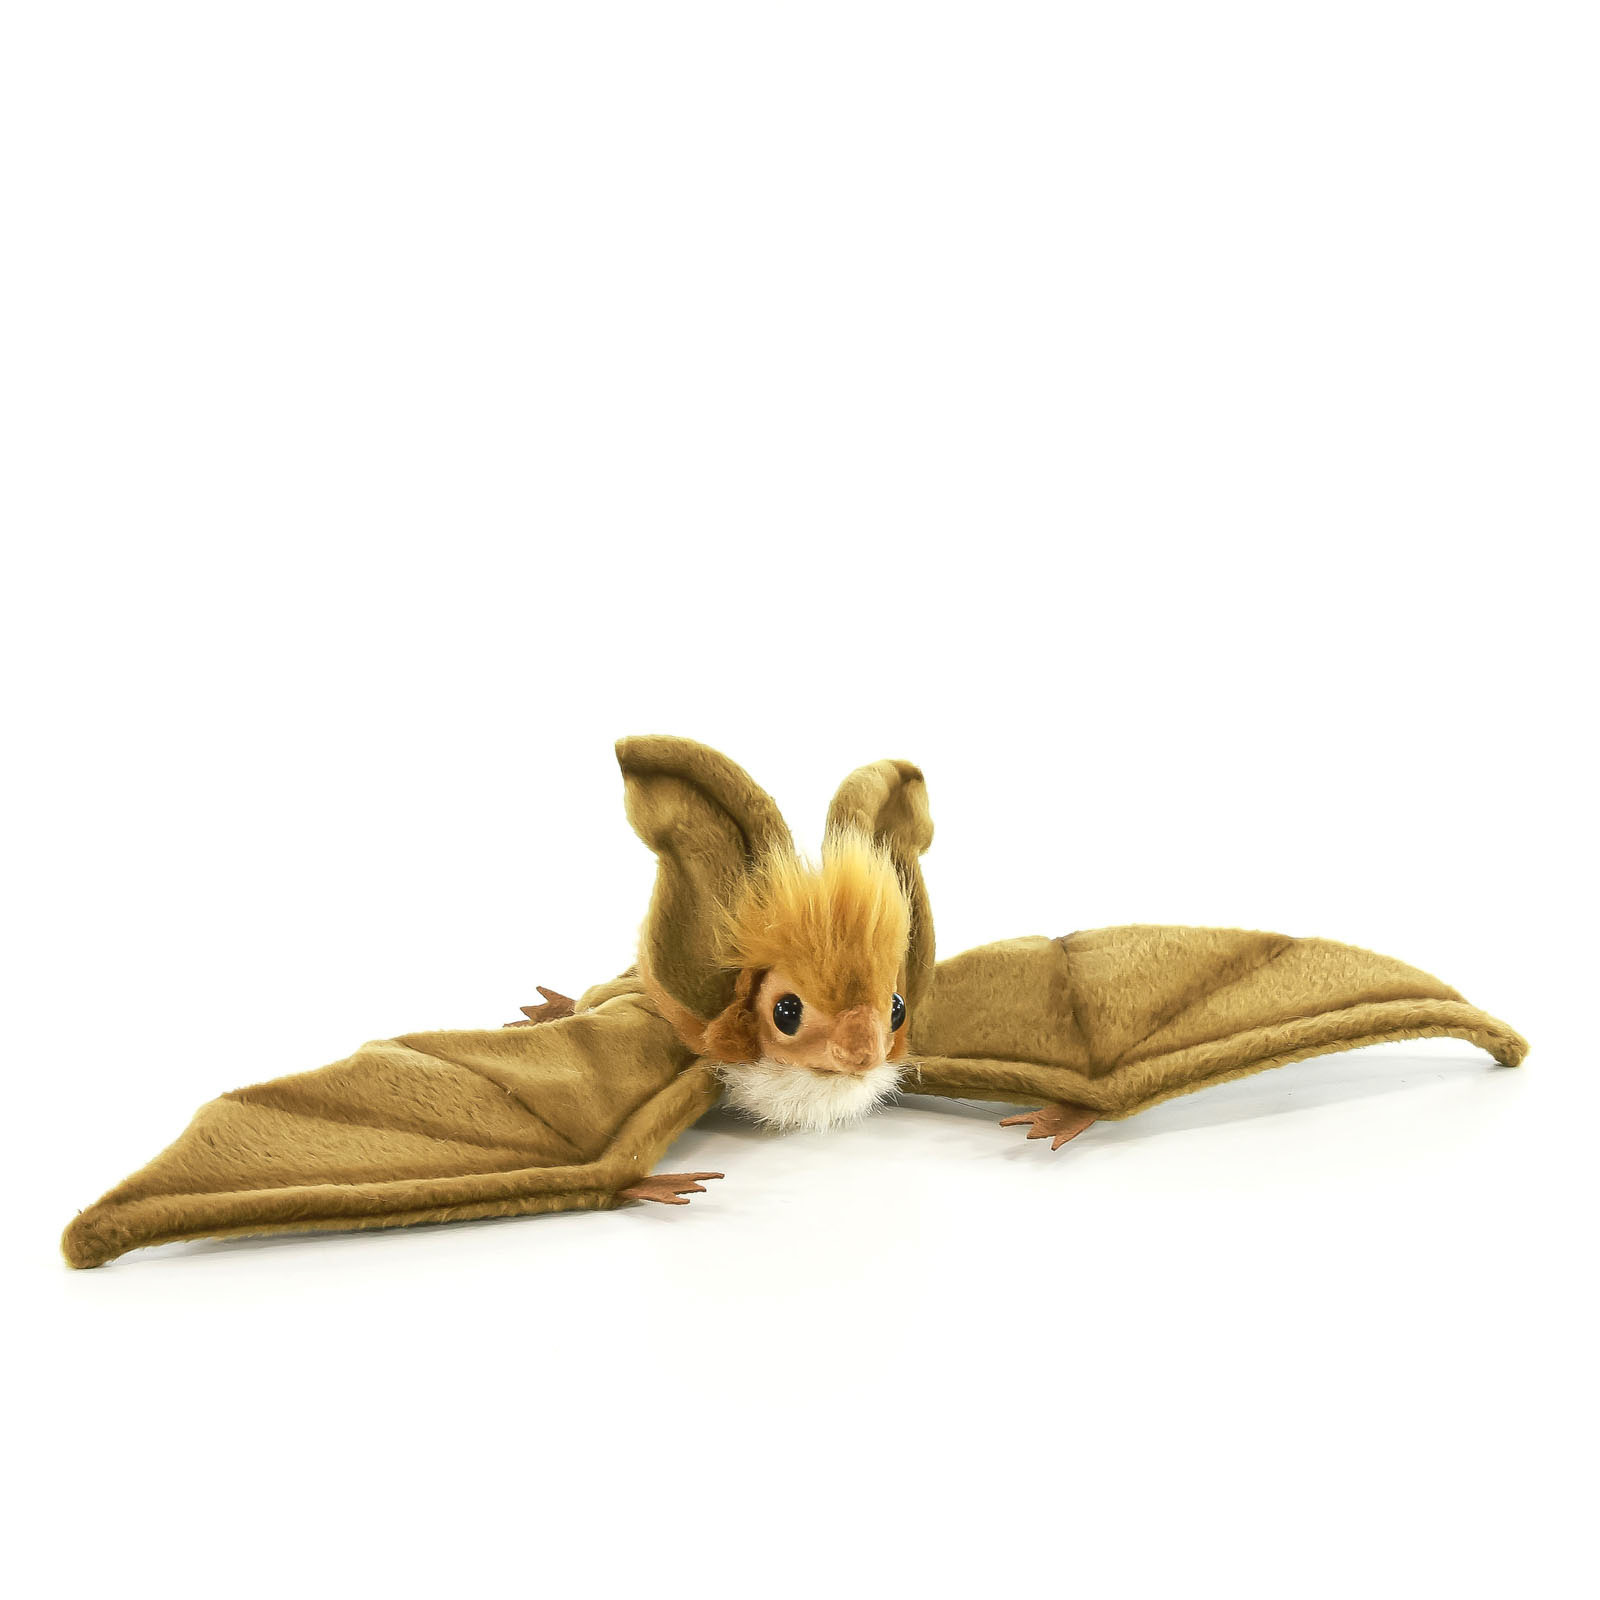 Реалистичная мягкая игрушка Hansa Creation Коричневая летучая мышь парящая, 37 см мягкая игрушка orbys мышь 25 см